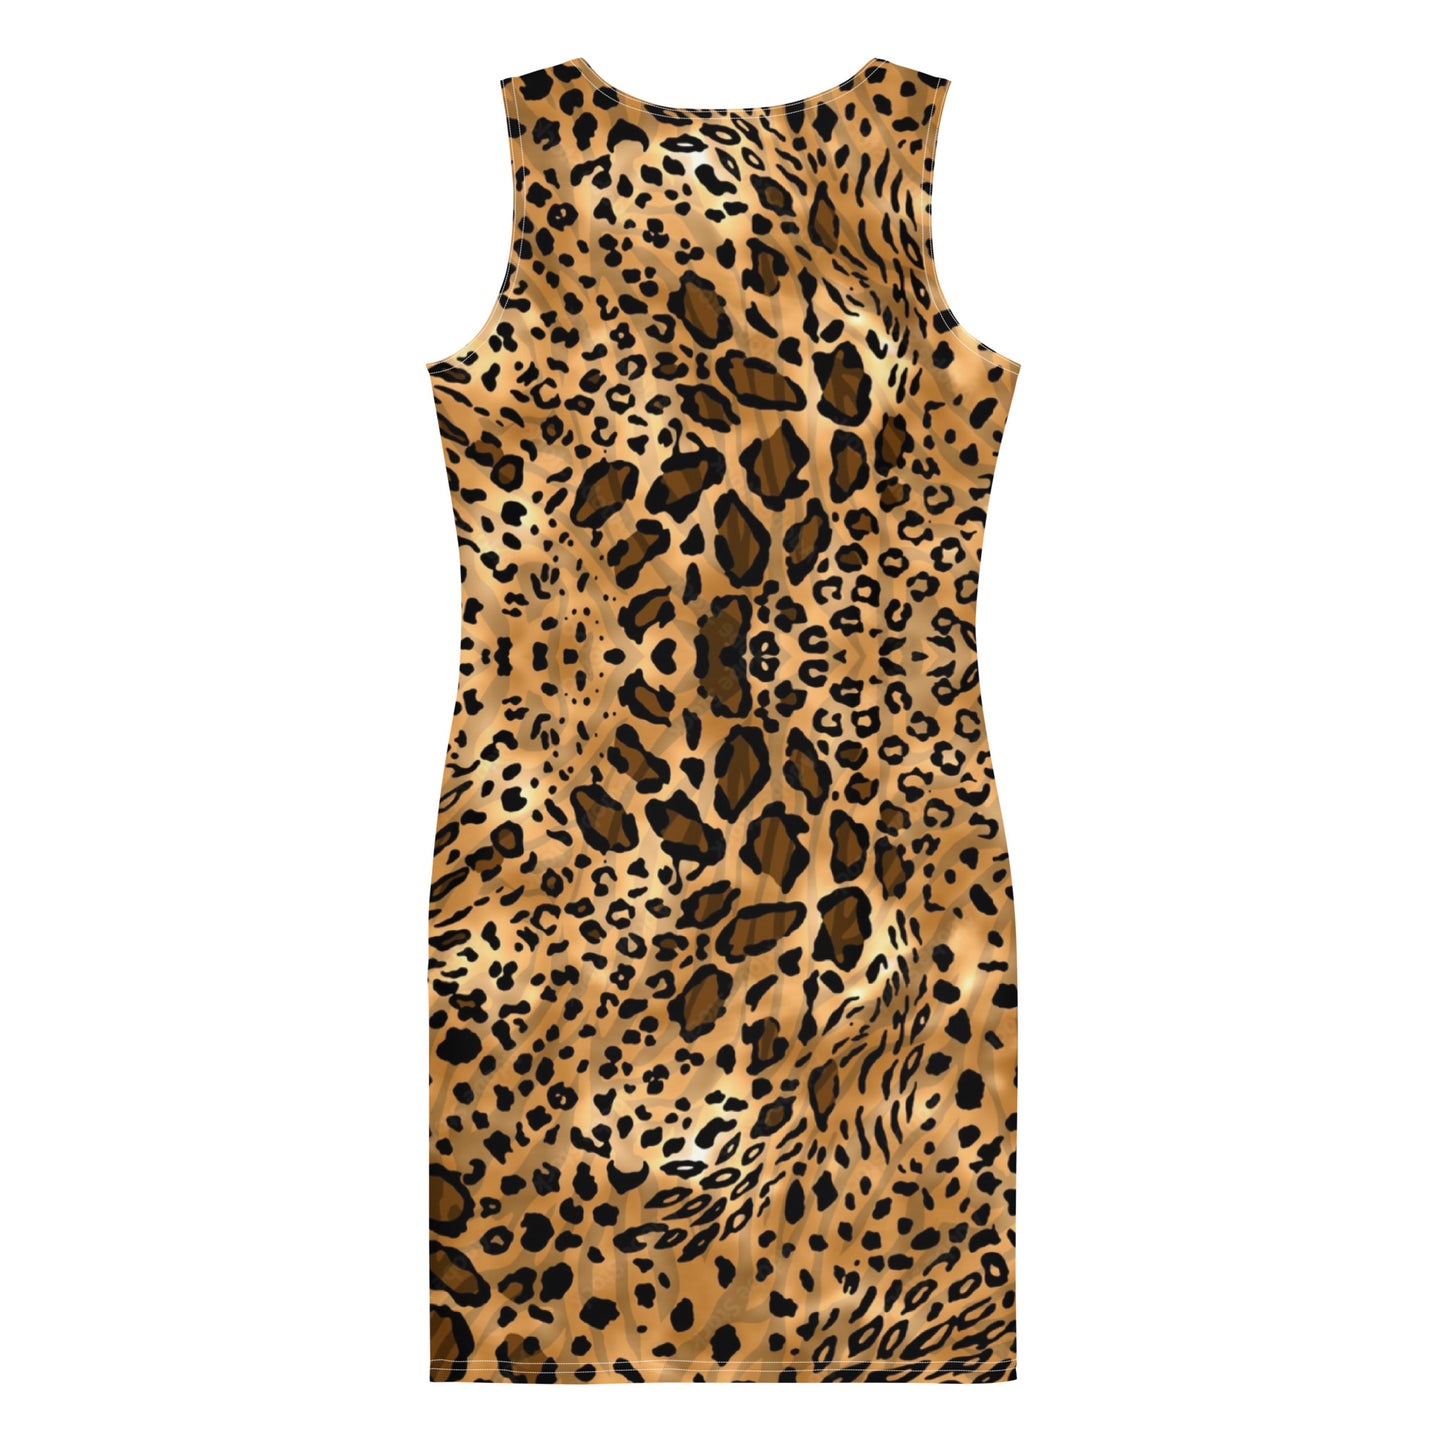 Maadish | Big Cat Multi Print Fitted Dress